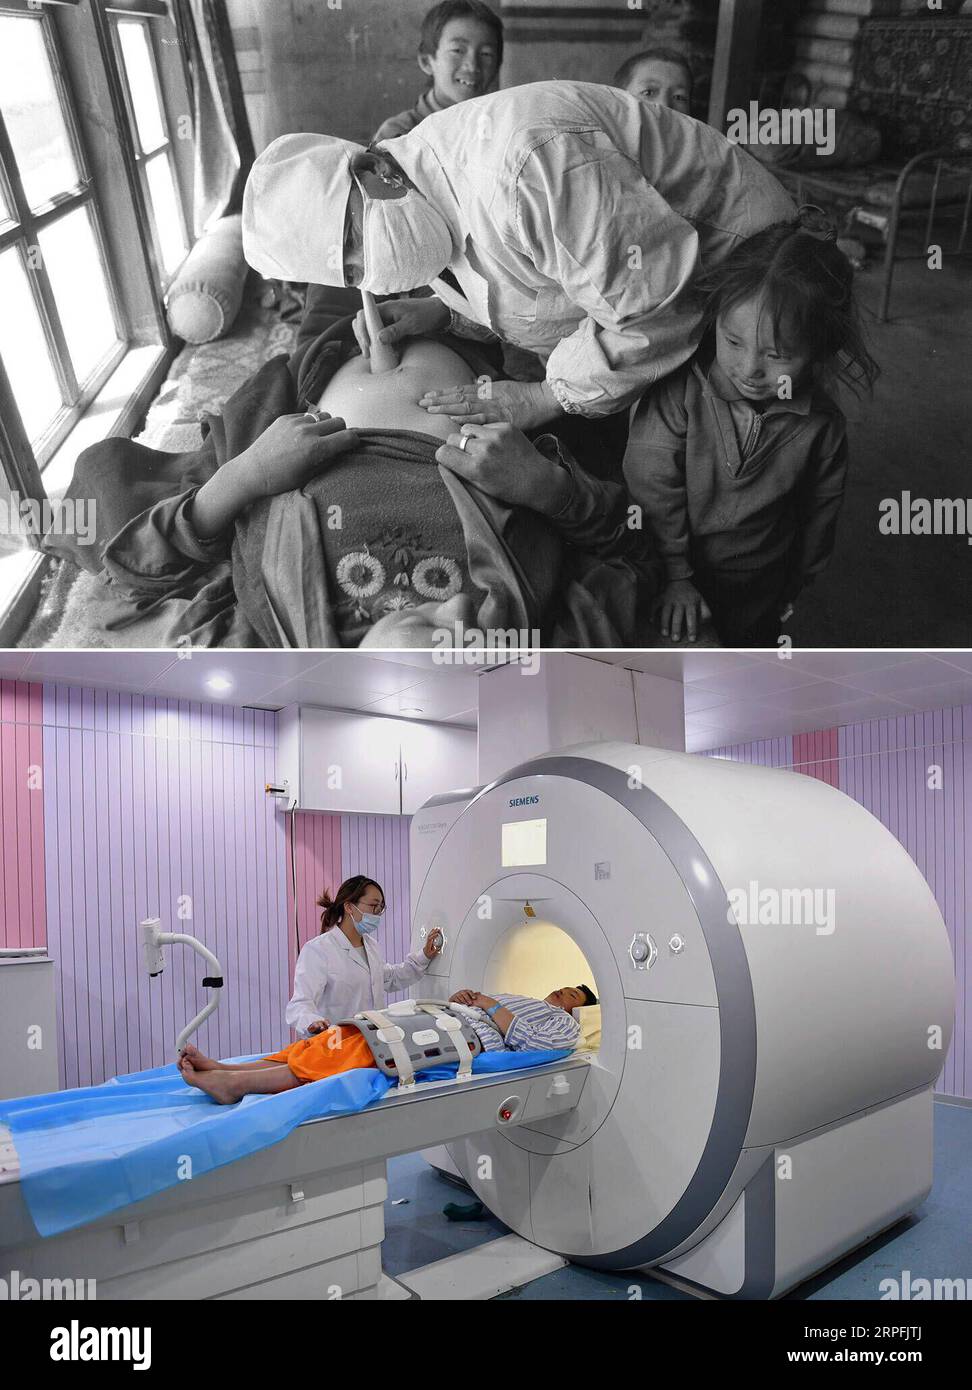 190926 -- PECHINO, 26 settembre 2019 Xinhua -- Top: File Photo scattato nel 1997 da Chogo mostra una donna incinta che riceve un esame fisico a Xigaze, nella regione autonoma del Tibet nel sud-ovest della Cina. In basso: La foto scattata il 15 maggio 2017 da Jigme Dorge mostra un medico che gestisce una macchina MRI a Lhasa, in Tibet. L'aspettativa di vita media delle persone in Tibet è salita a 70,6 anni, quasi il doppio rispetto ai 35,5 anni del 1959. Ora ci sono 1.548 strutture sanitarie che forniscono 19.787 posti letto in Tibet, con quasi 20.000 operatori sanitari e medici. Nel 1949, quando fu fondata la Repubblica Popolare Cinese, la C Foto Stock